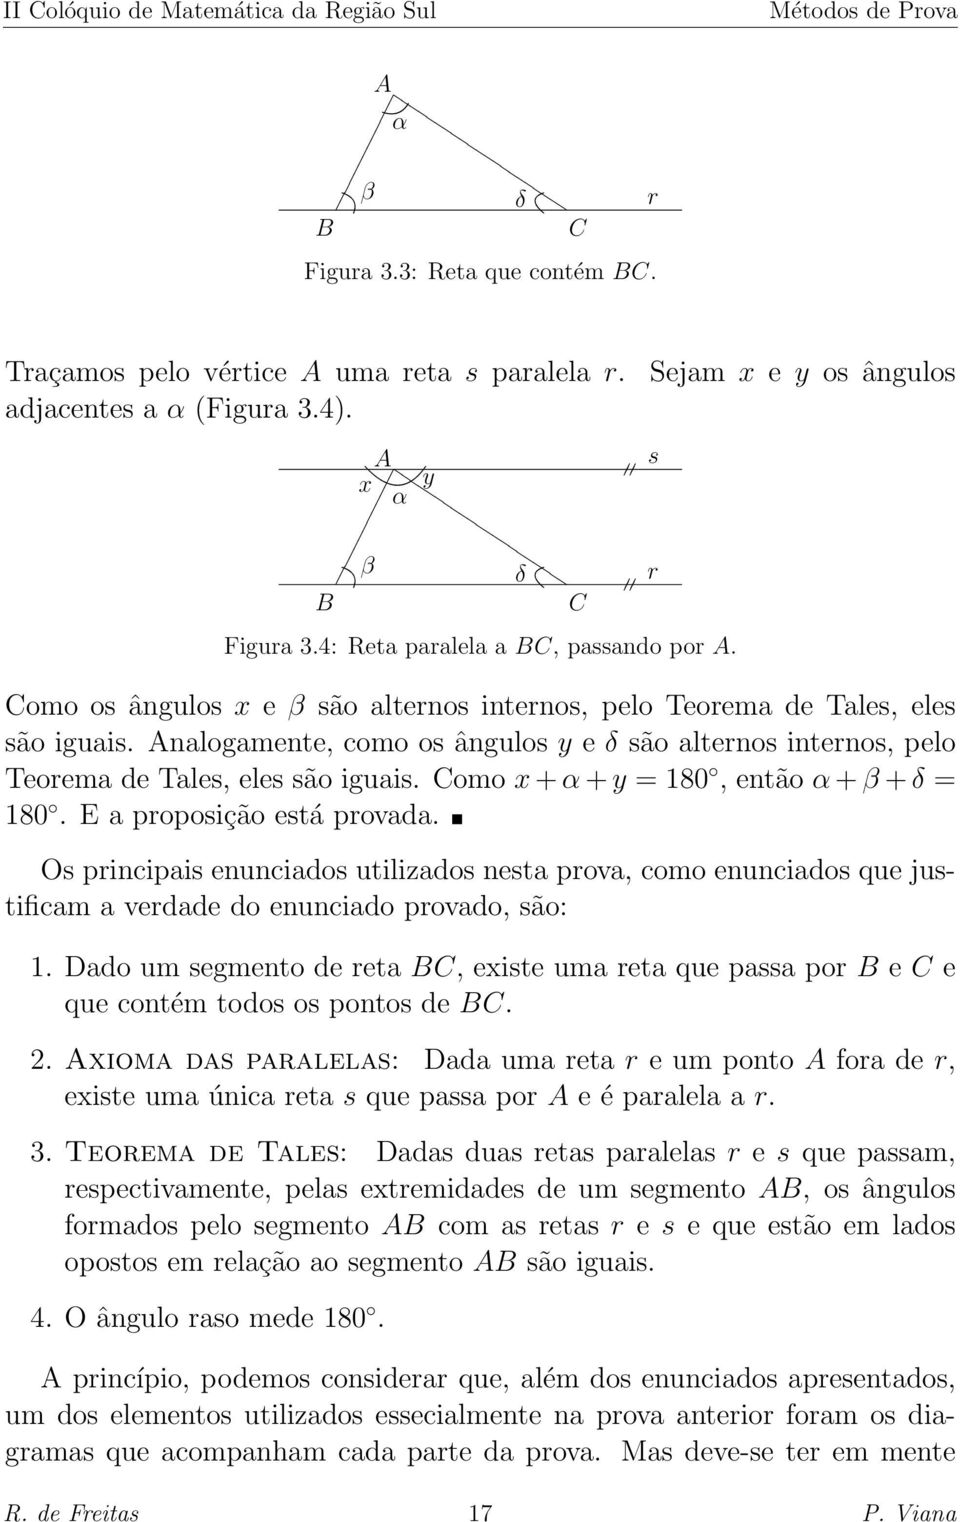 Analogamente, como os ângulos y e δ são alternos internos, pelo Teorema de Tales, eles são iguais. Como x + α + y = 180, então α + β + δ = 180. E a proposição está provada.